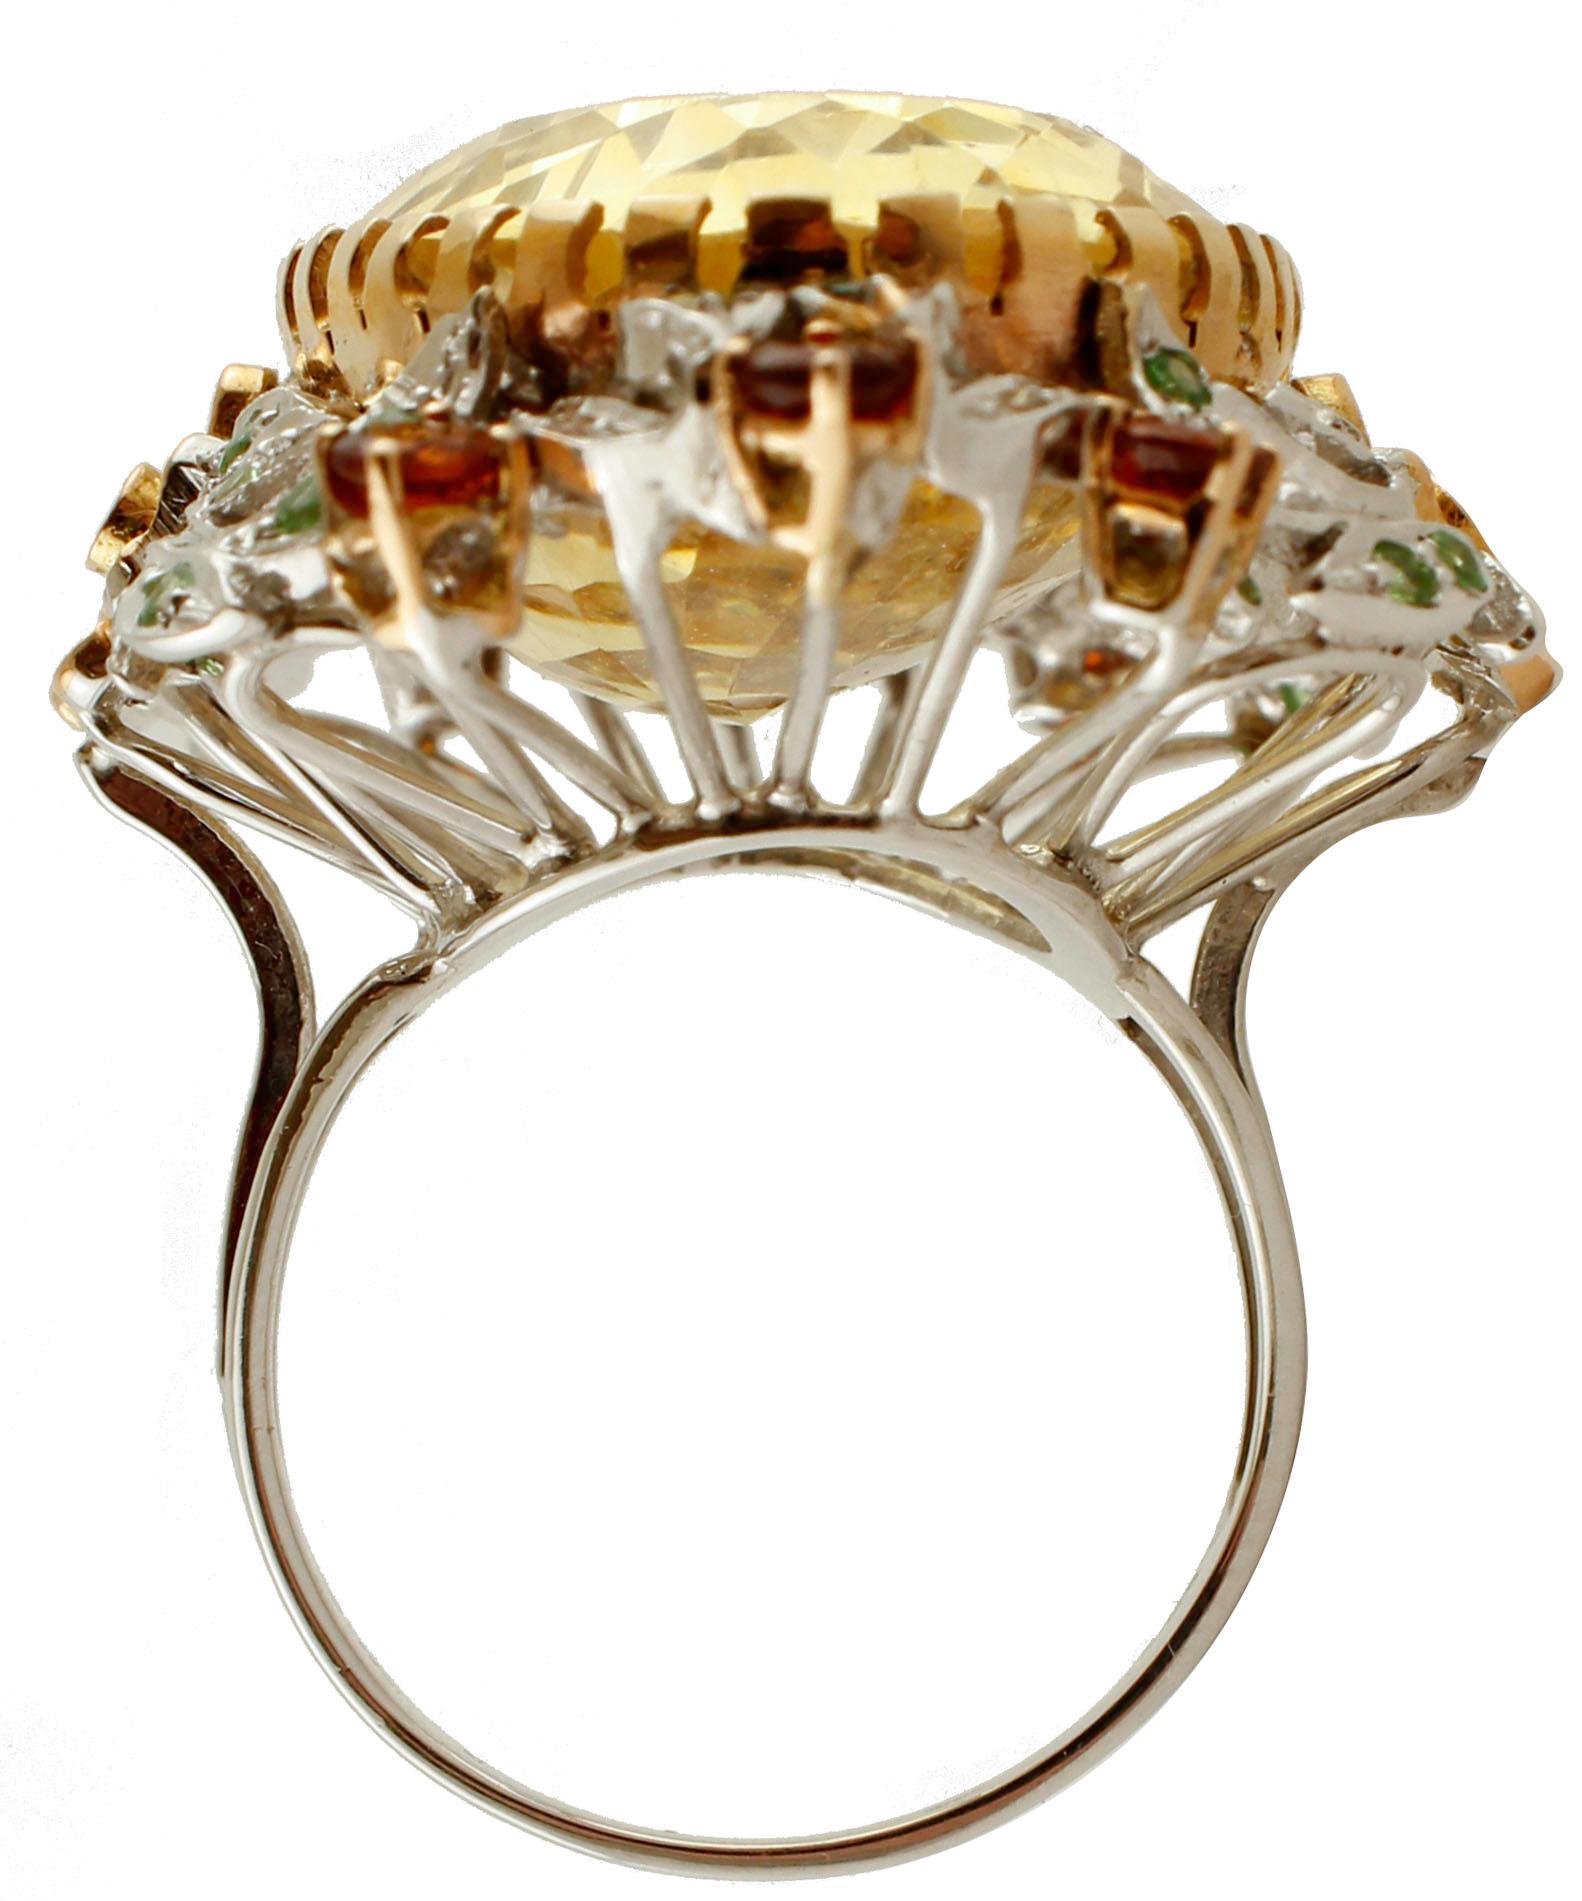 Retro Diamonds, Green Tsavorites, Topazes, Citrine, Rose and White Gold Cluster Ring For Sale